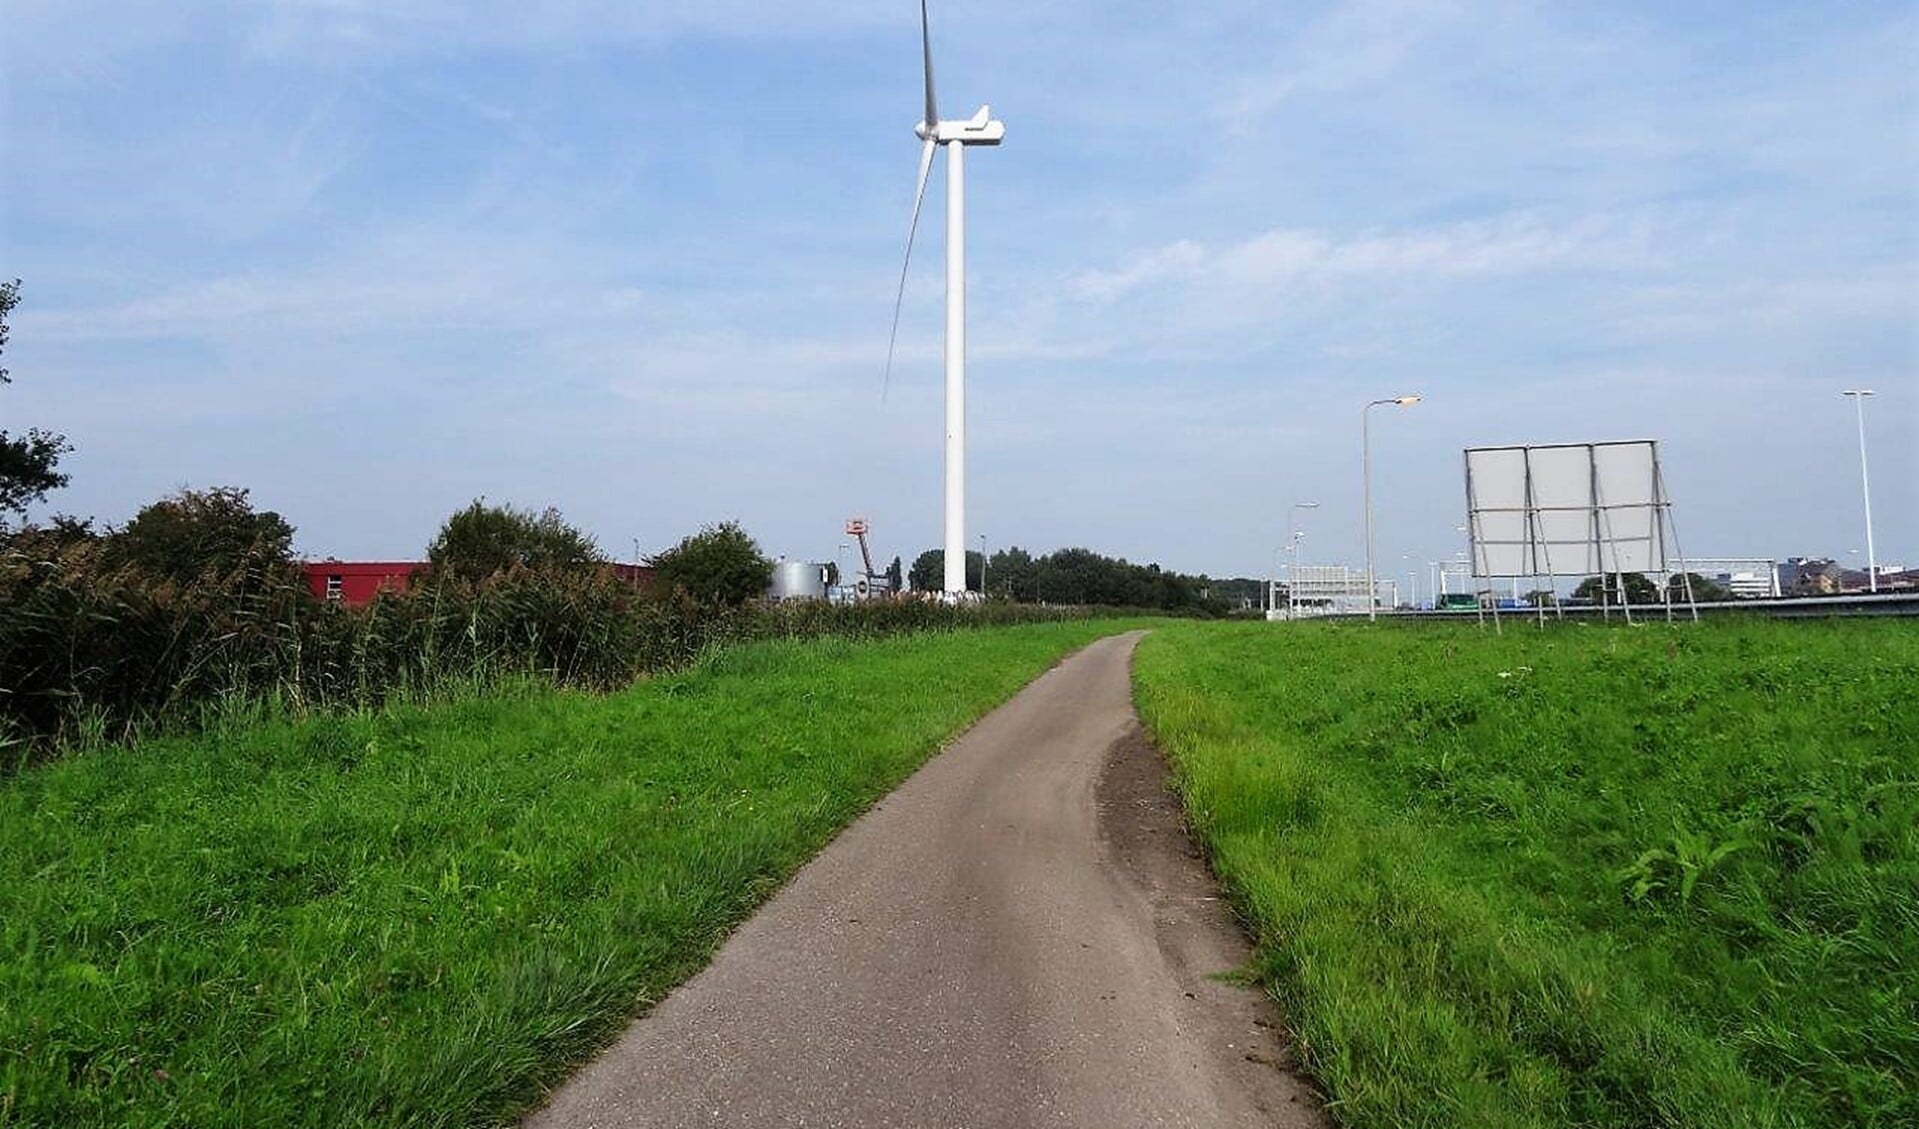 De windturbine die aan rijksweg A4 staat (foto: Ap de Heus).